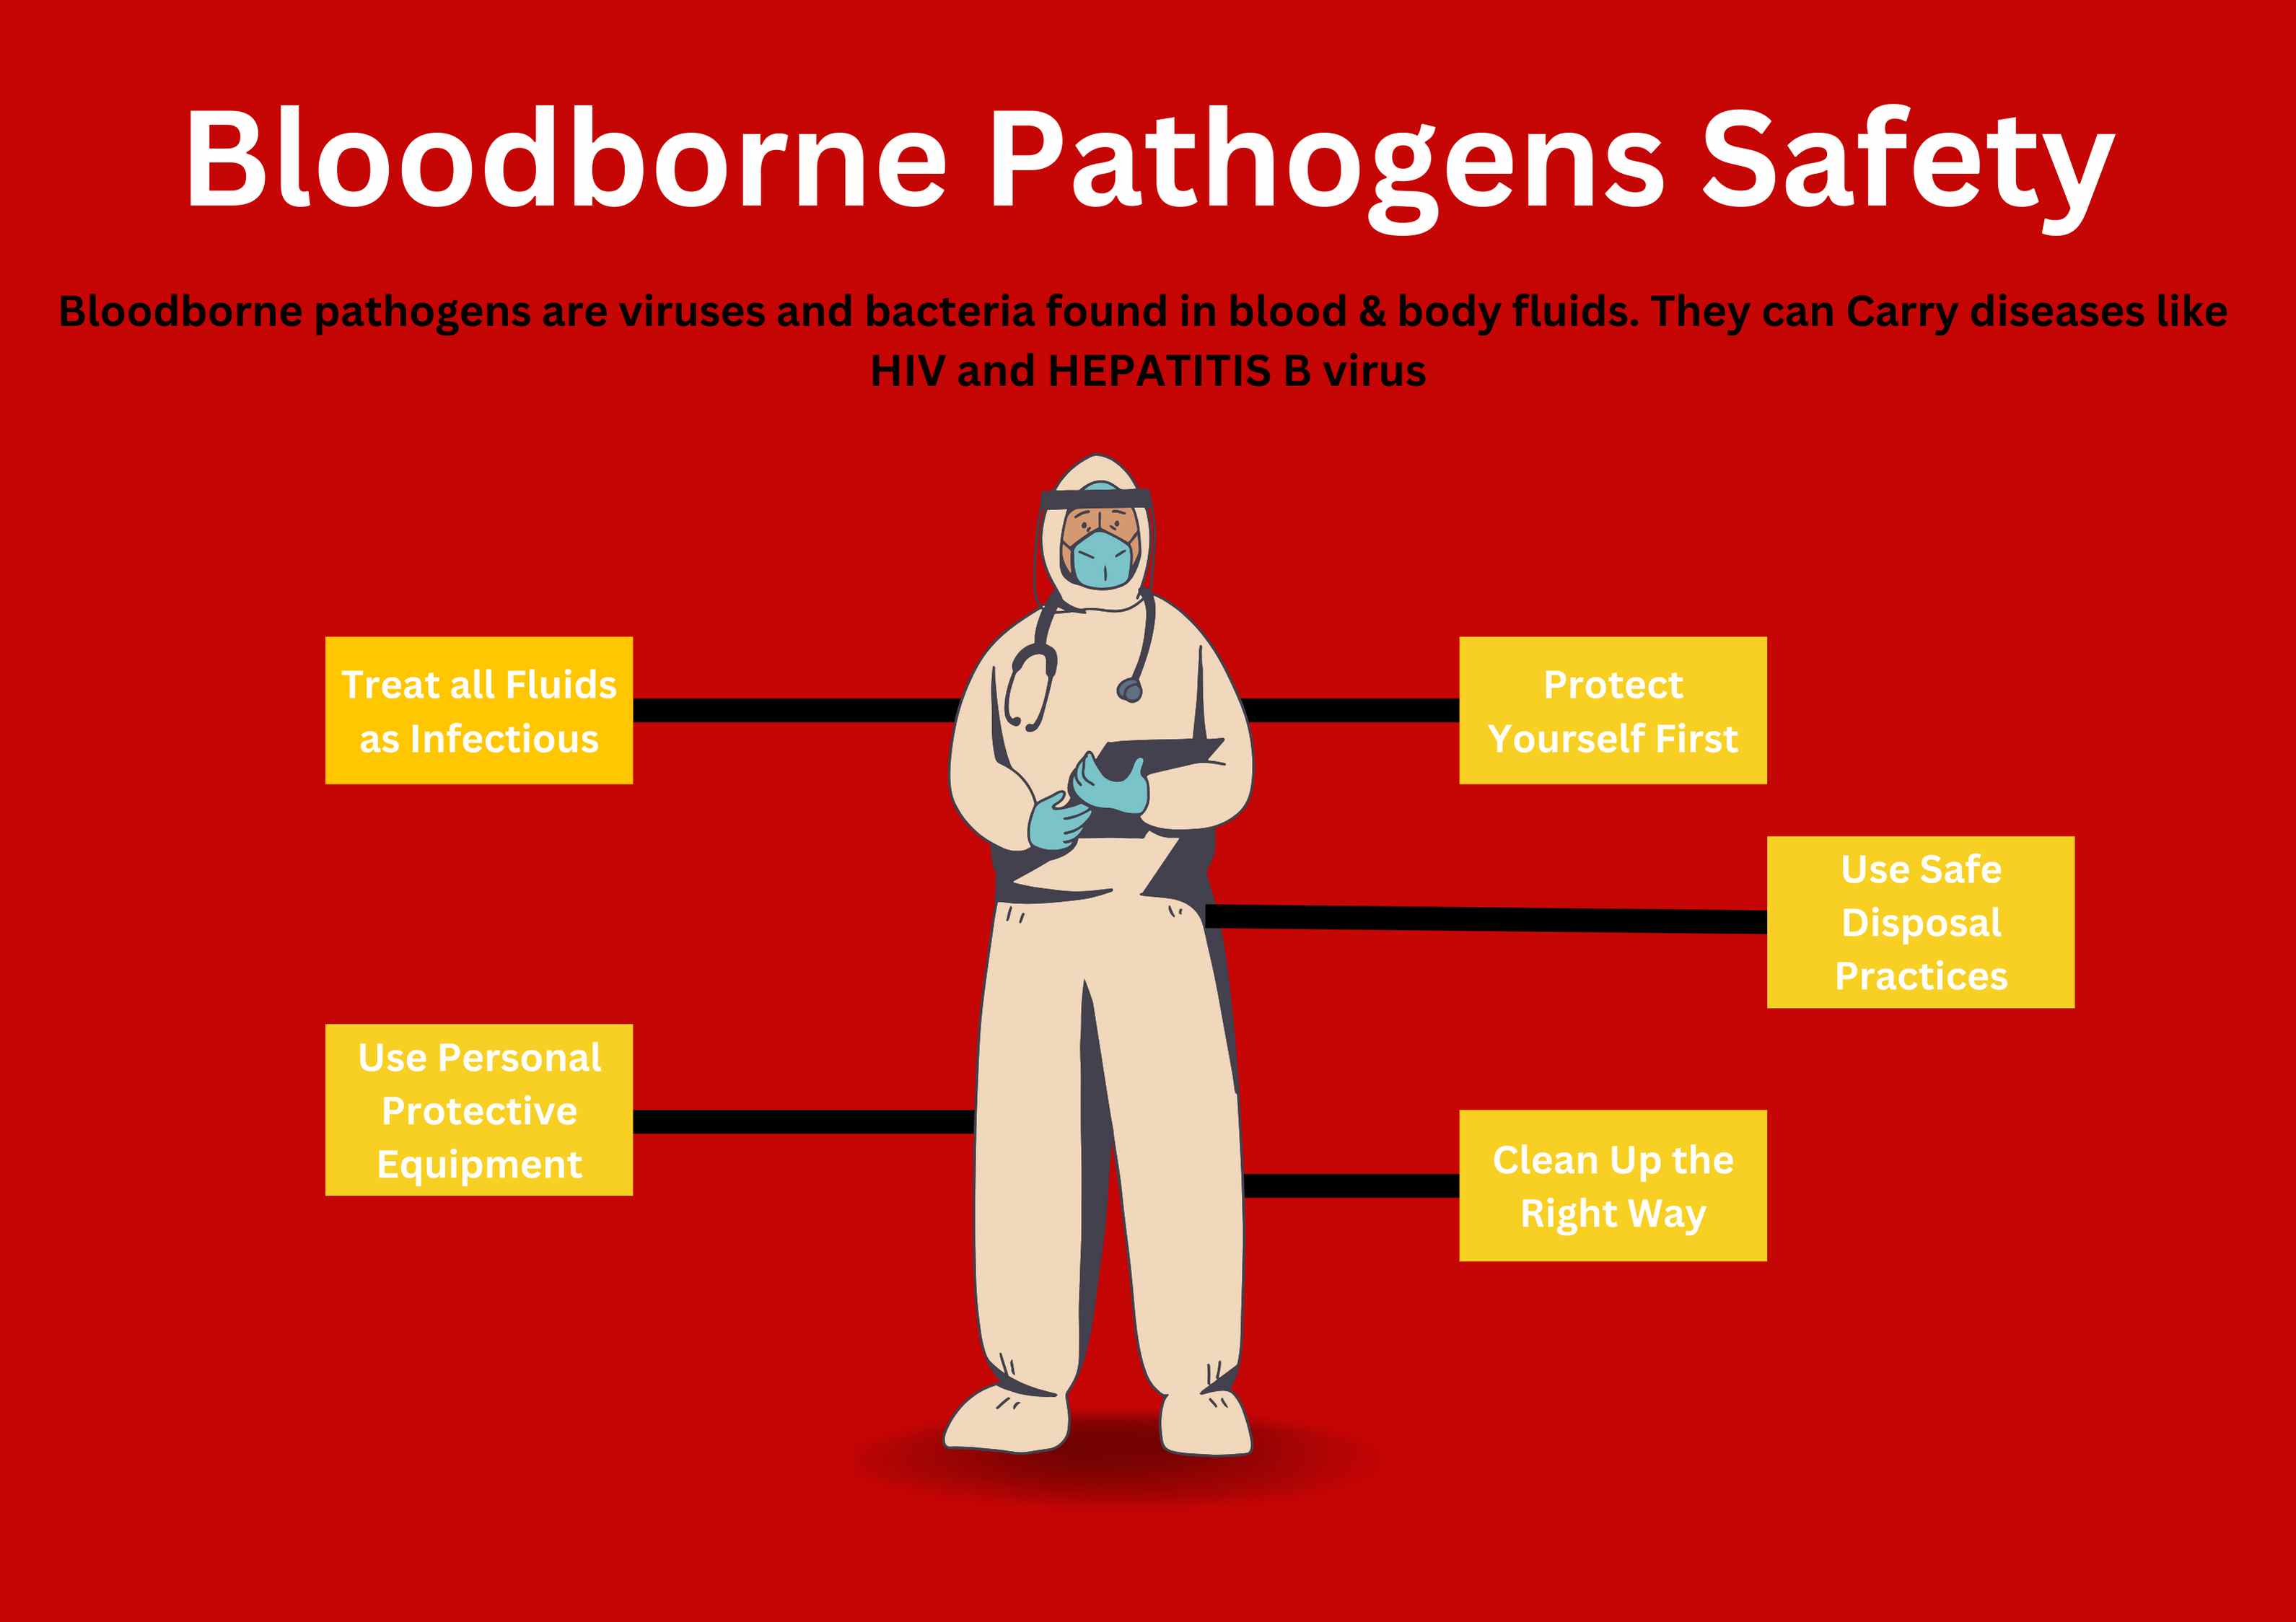 Bloodborne Pathogen Training: 